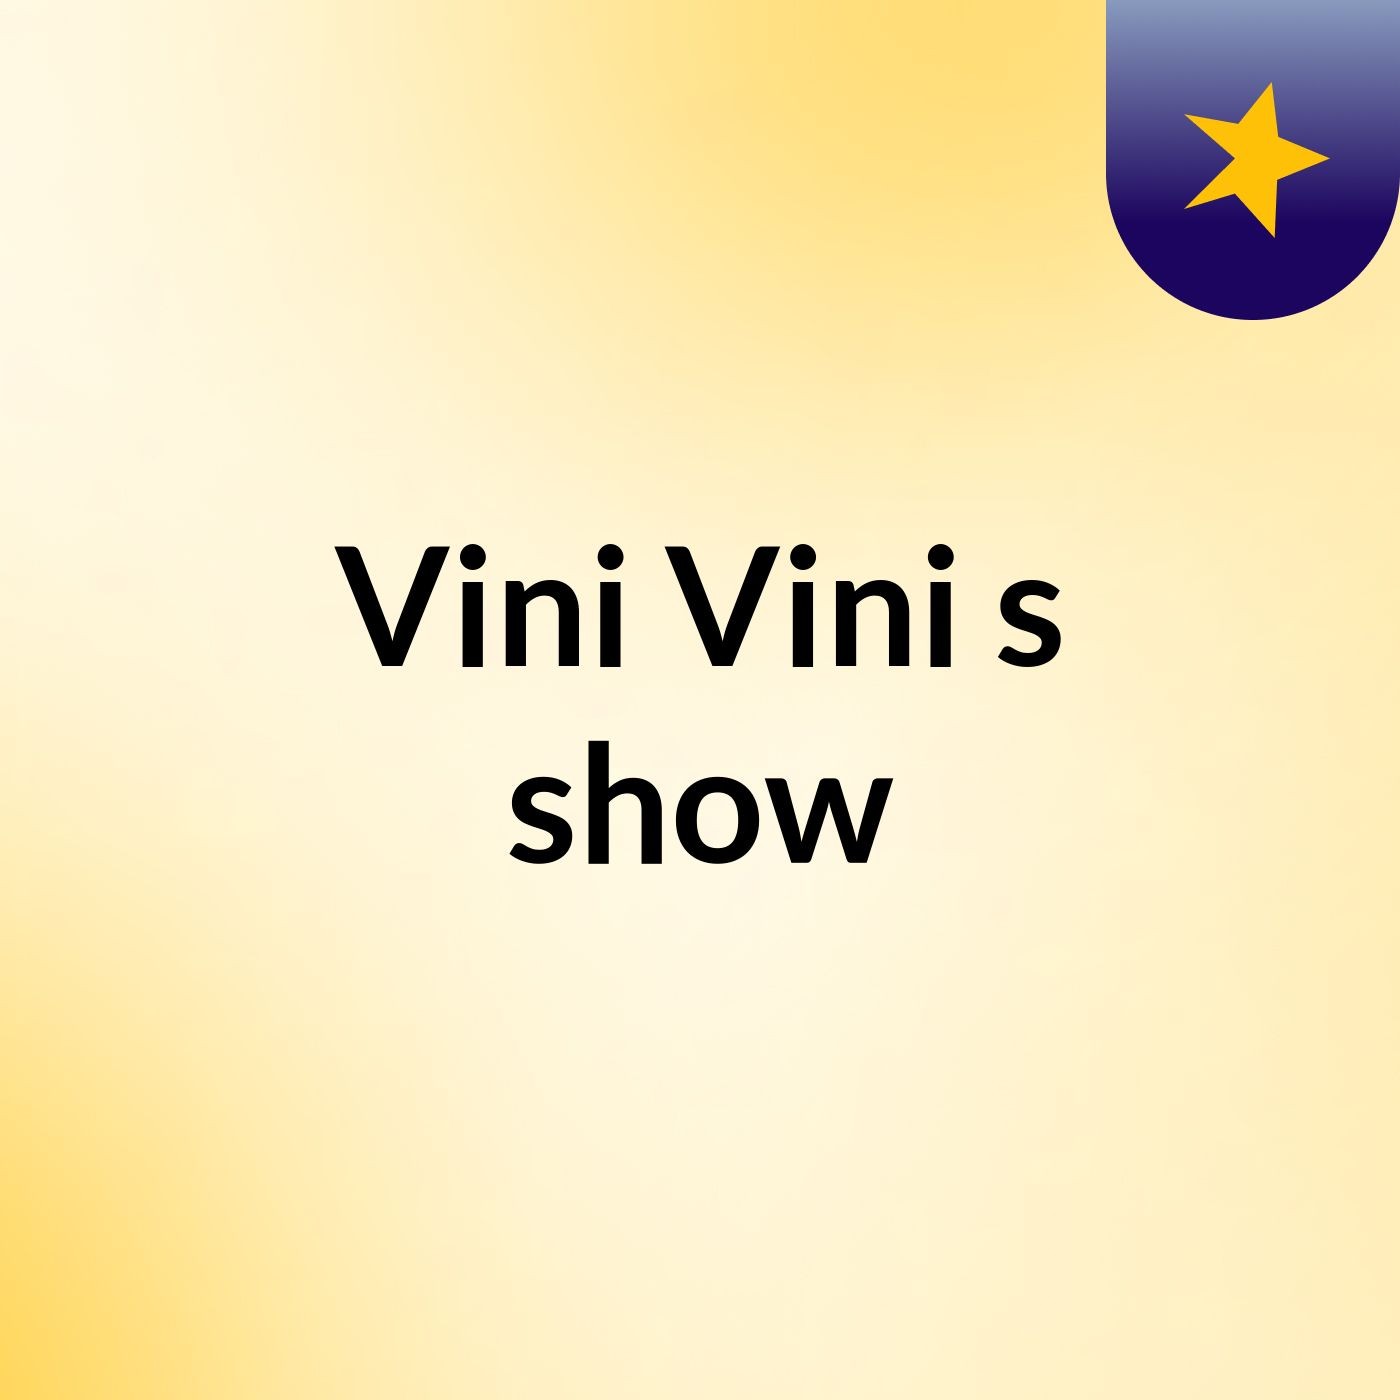 Vini Vini's show